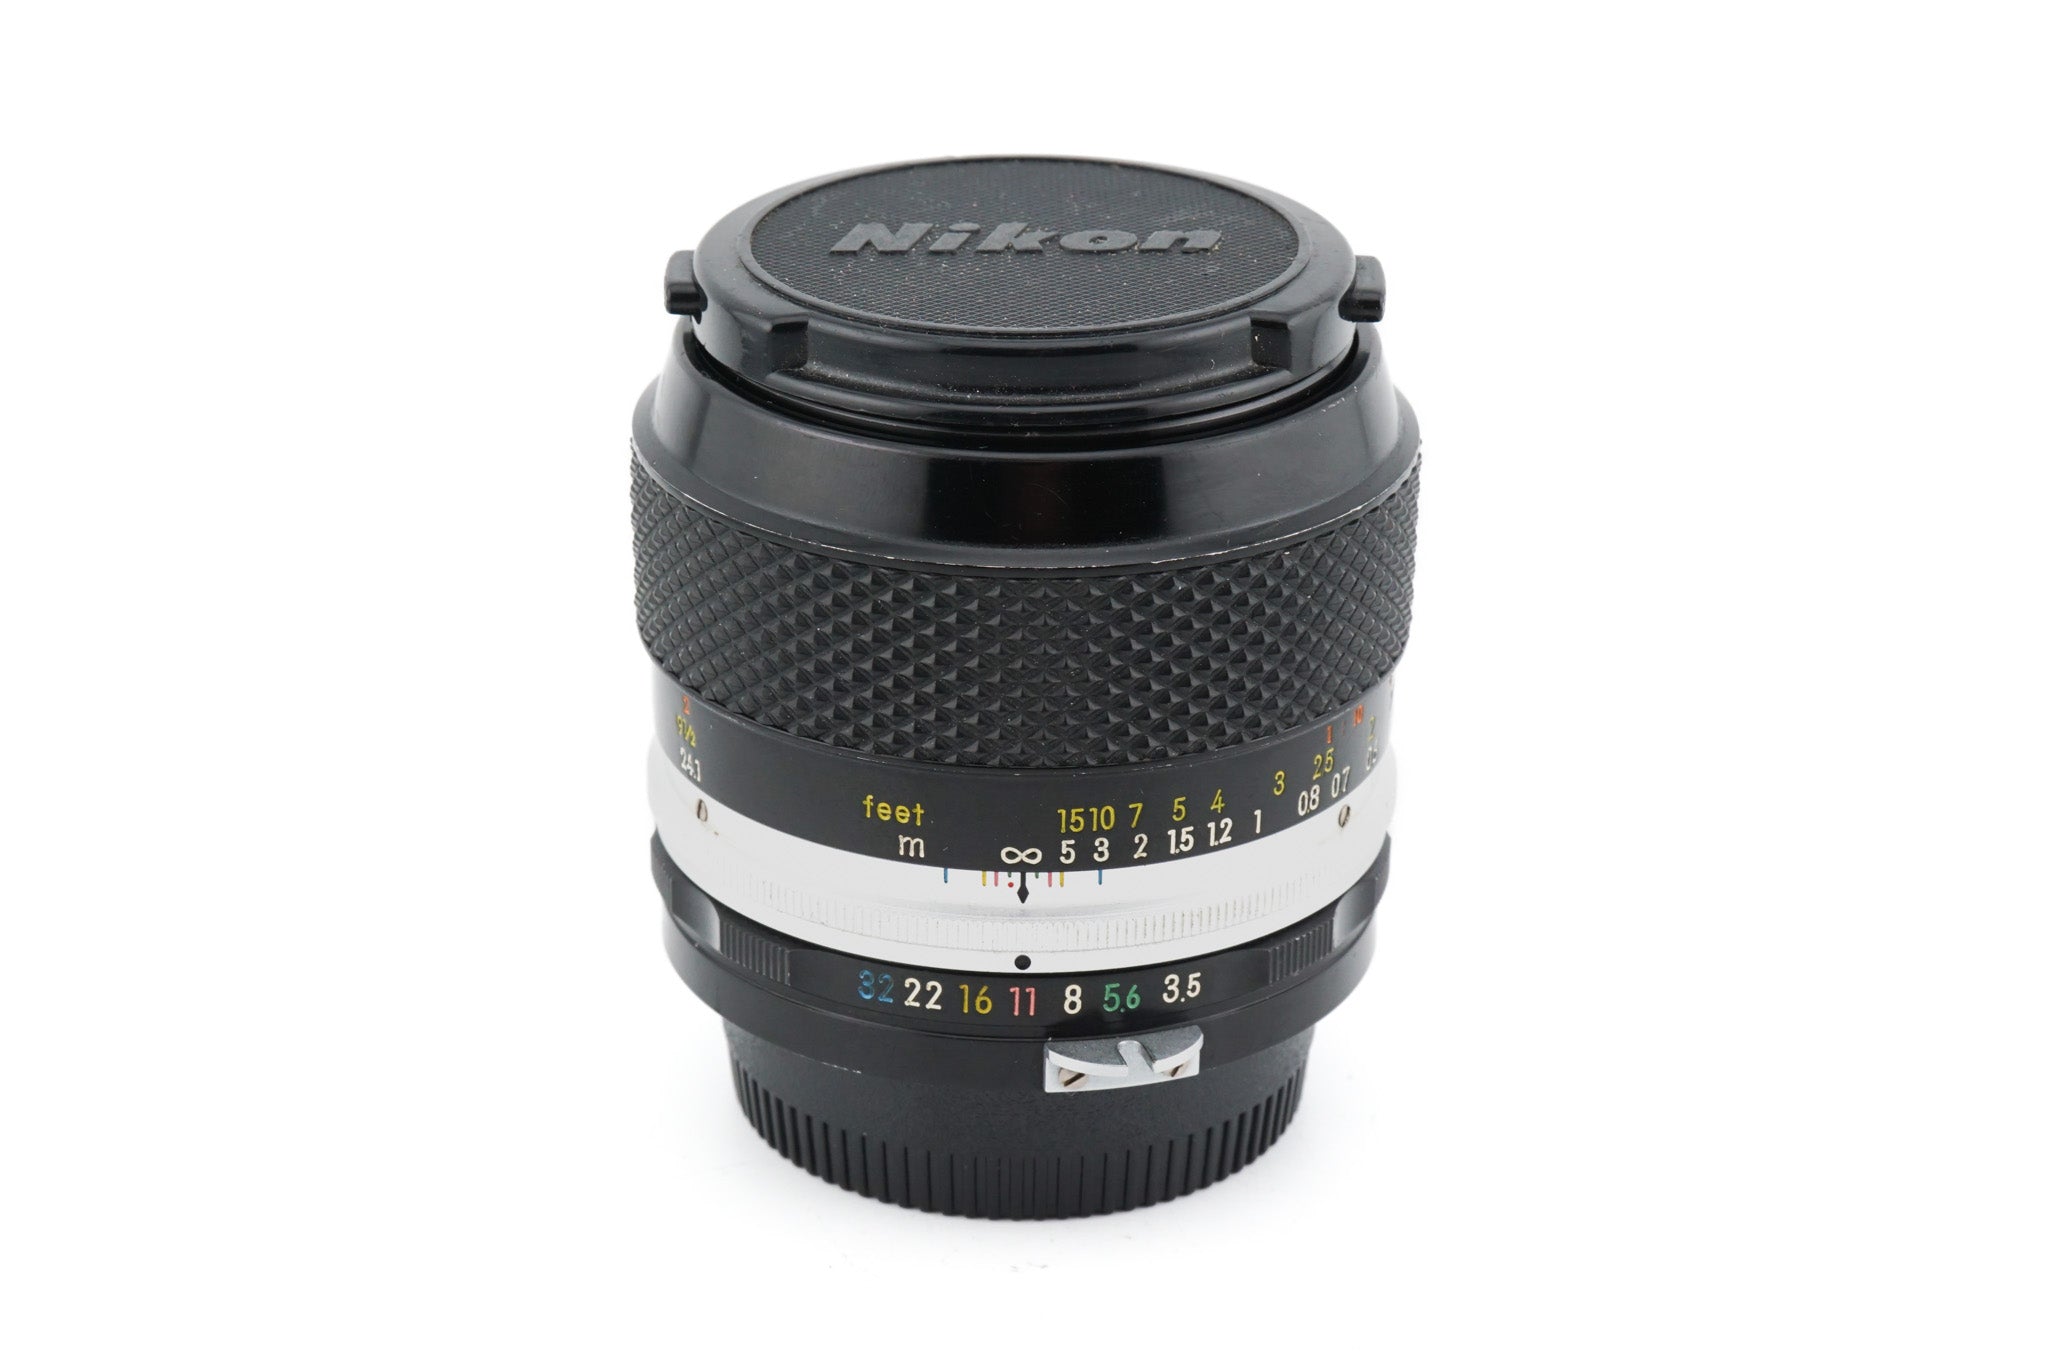 Nikon 55mm f3.5 Micro-Nikkor-P Auto Pre-Ai - Lens – Kamerastore